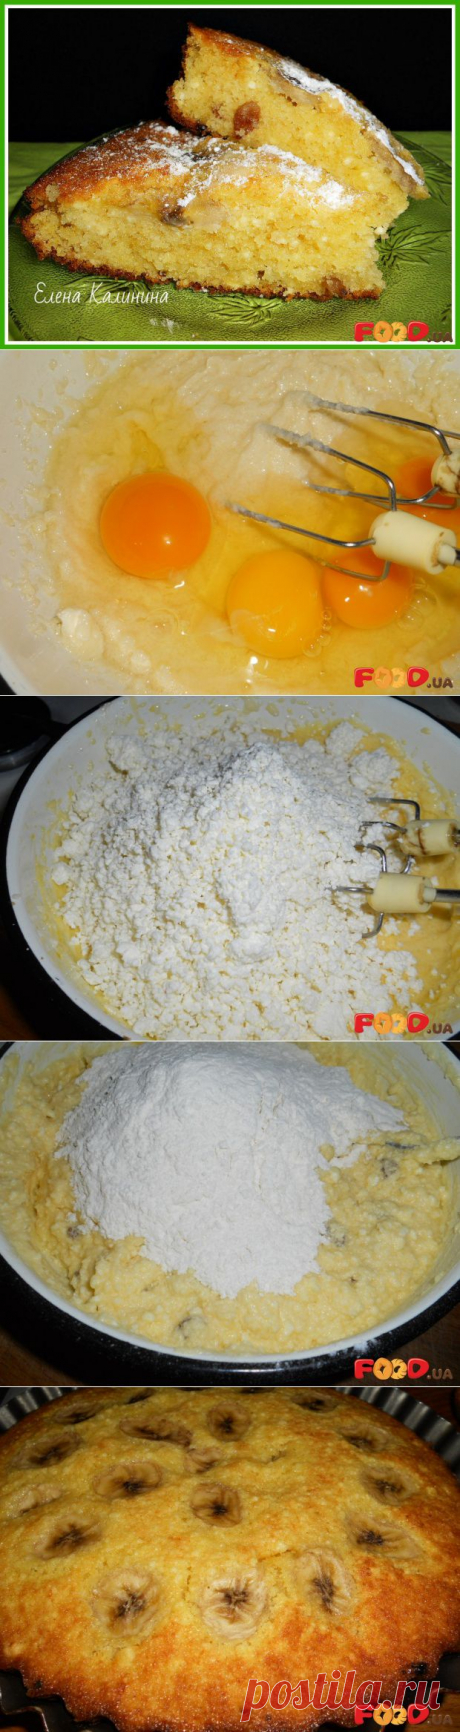 Творожный кекс с бананом - Кулинарные рецепты на Food.ua